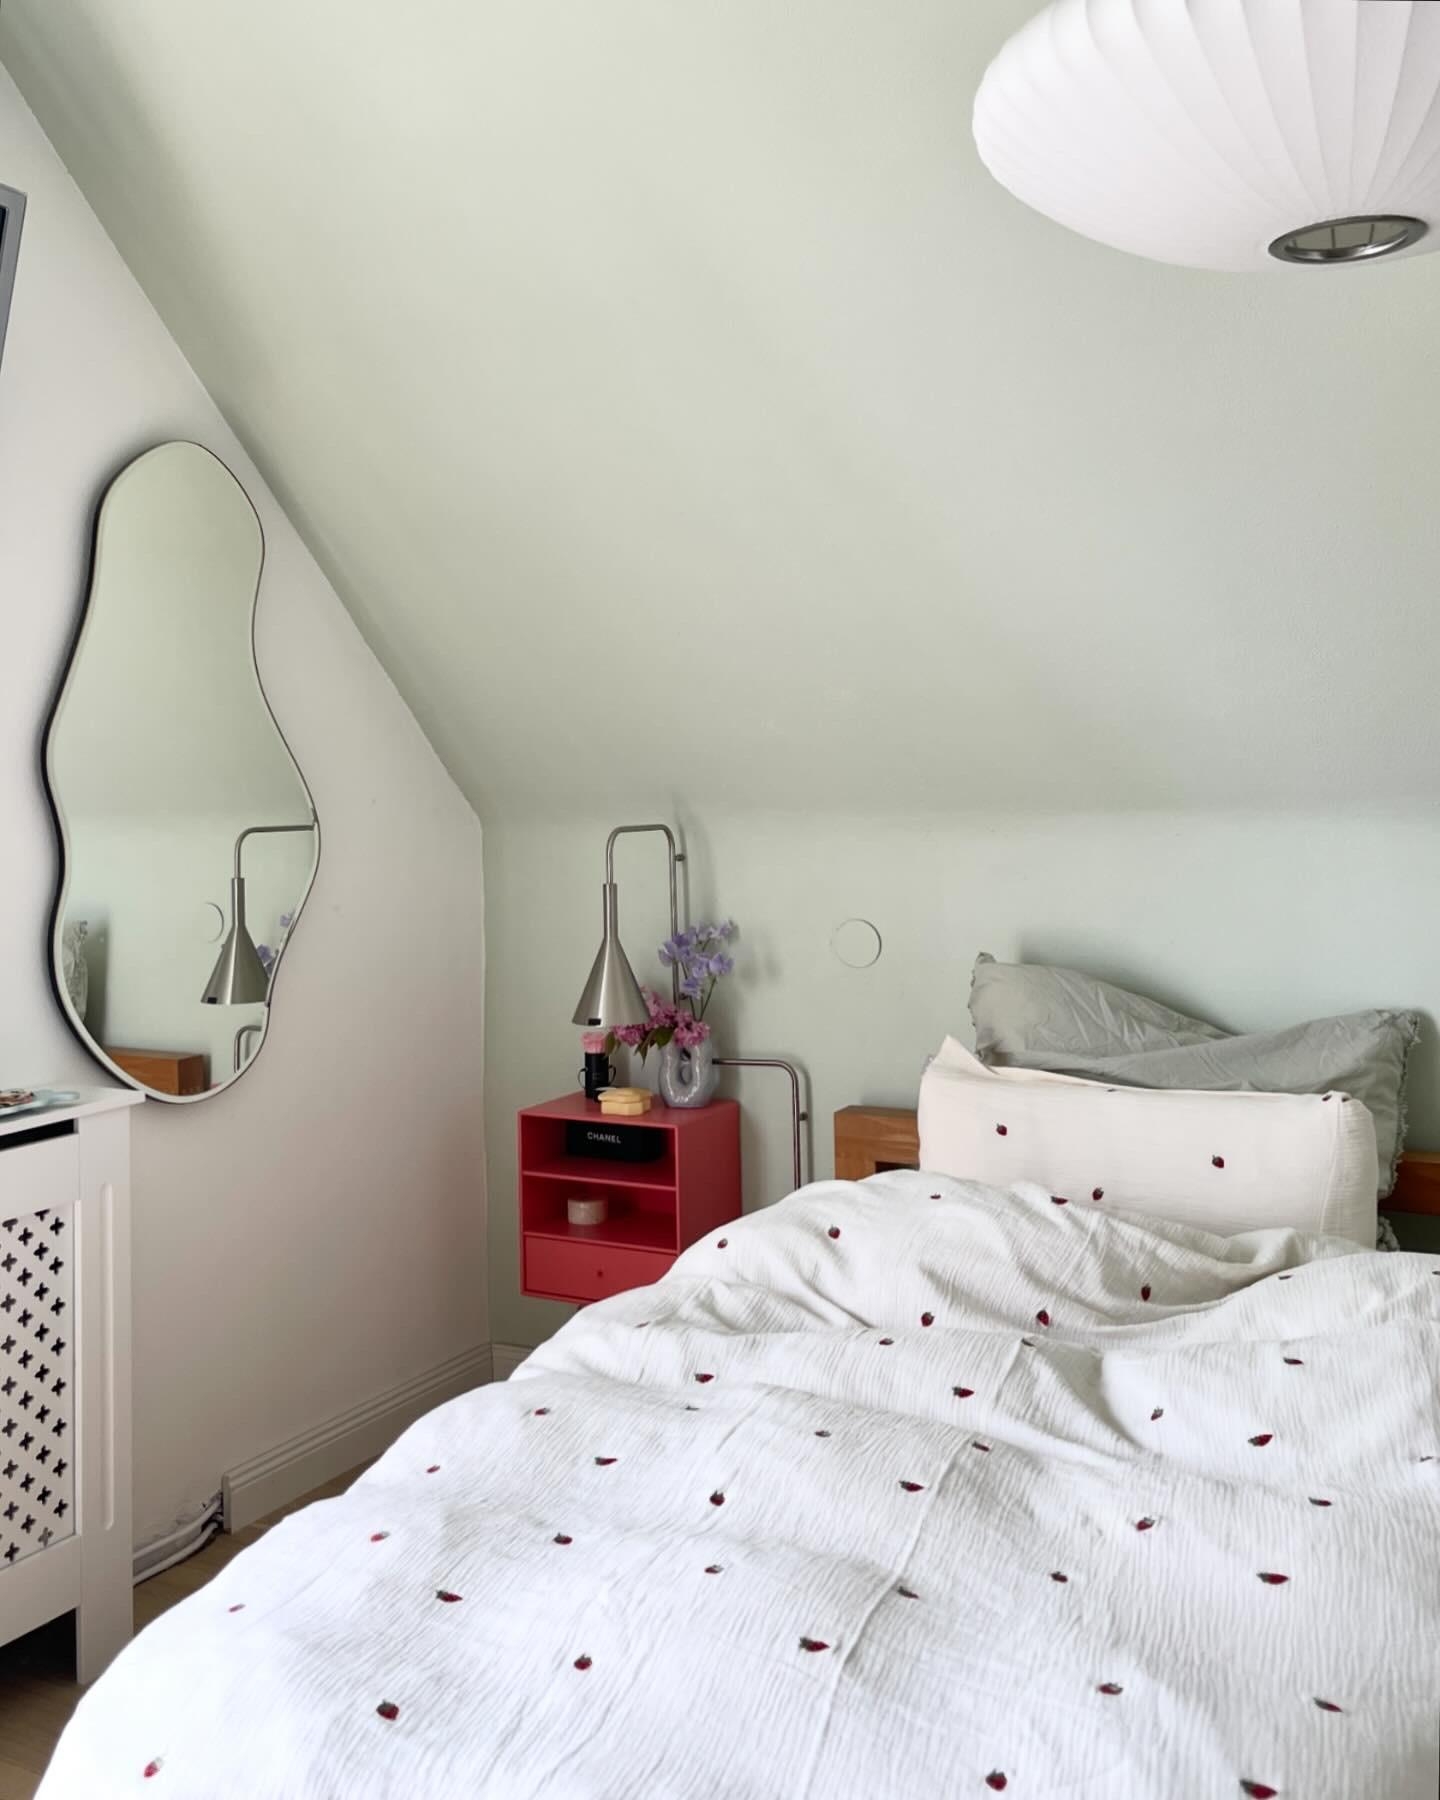 #living #home #interior #interiør #altbauliebe #wohnen #skandinavisch #couchstyle #schlafzimmer #wolldecke #lampe #skandi #spiegel #deko #bedroom